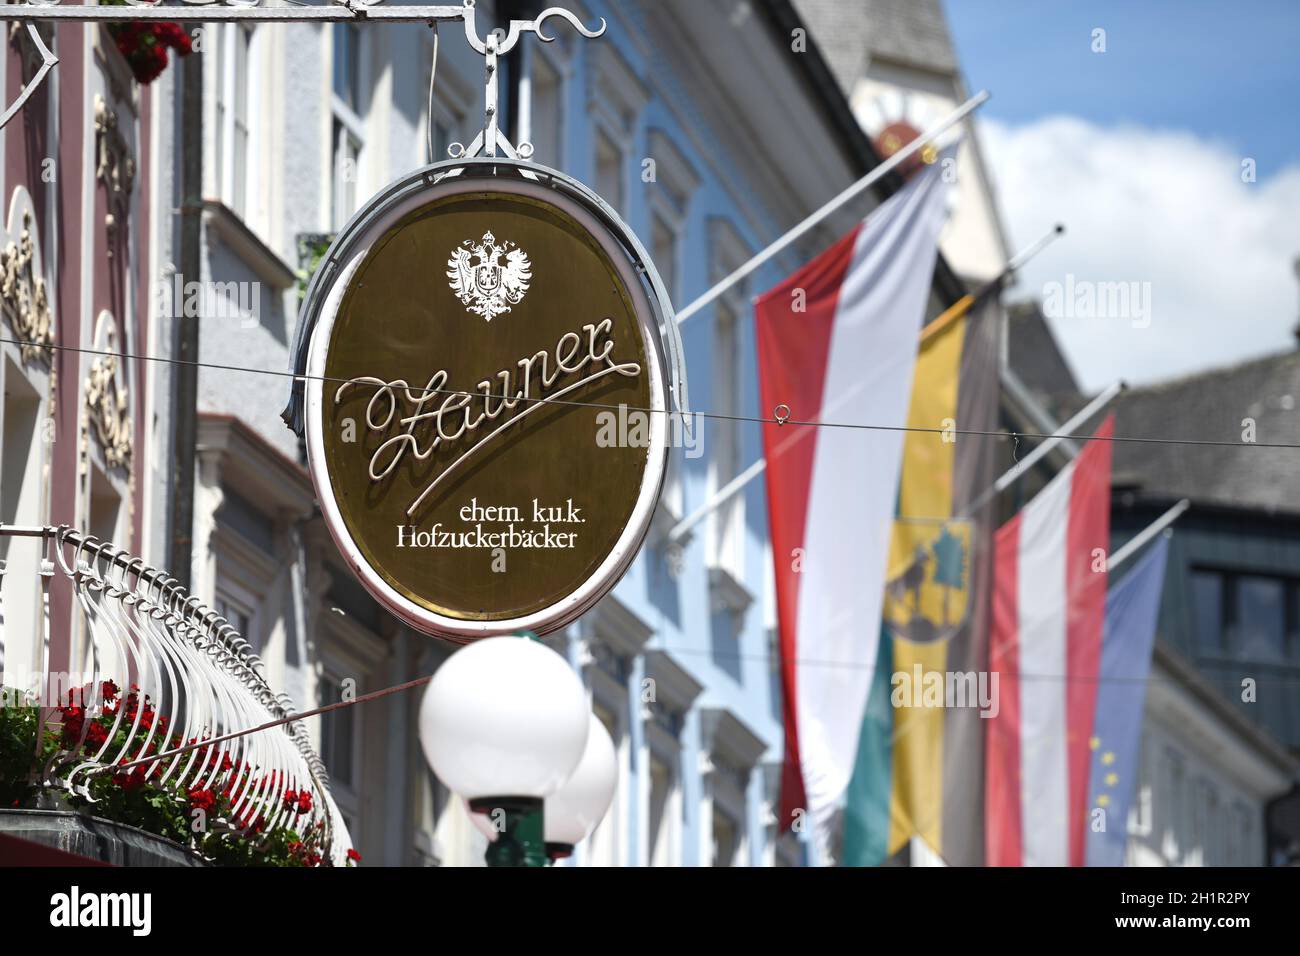 Das weltberühmte Cafe Zauner in Bad Ischl, Salzkammergut, Oberösterreich, Österreich, Europa - The world-famous Cafe Zauner in Bad Ischl, Salzkammergu Stock Photo